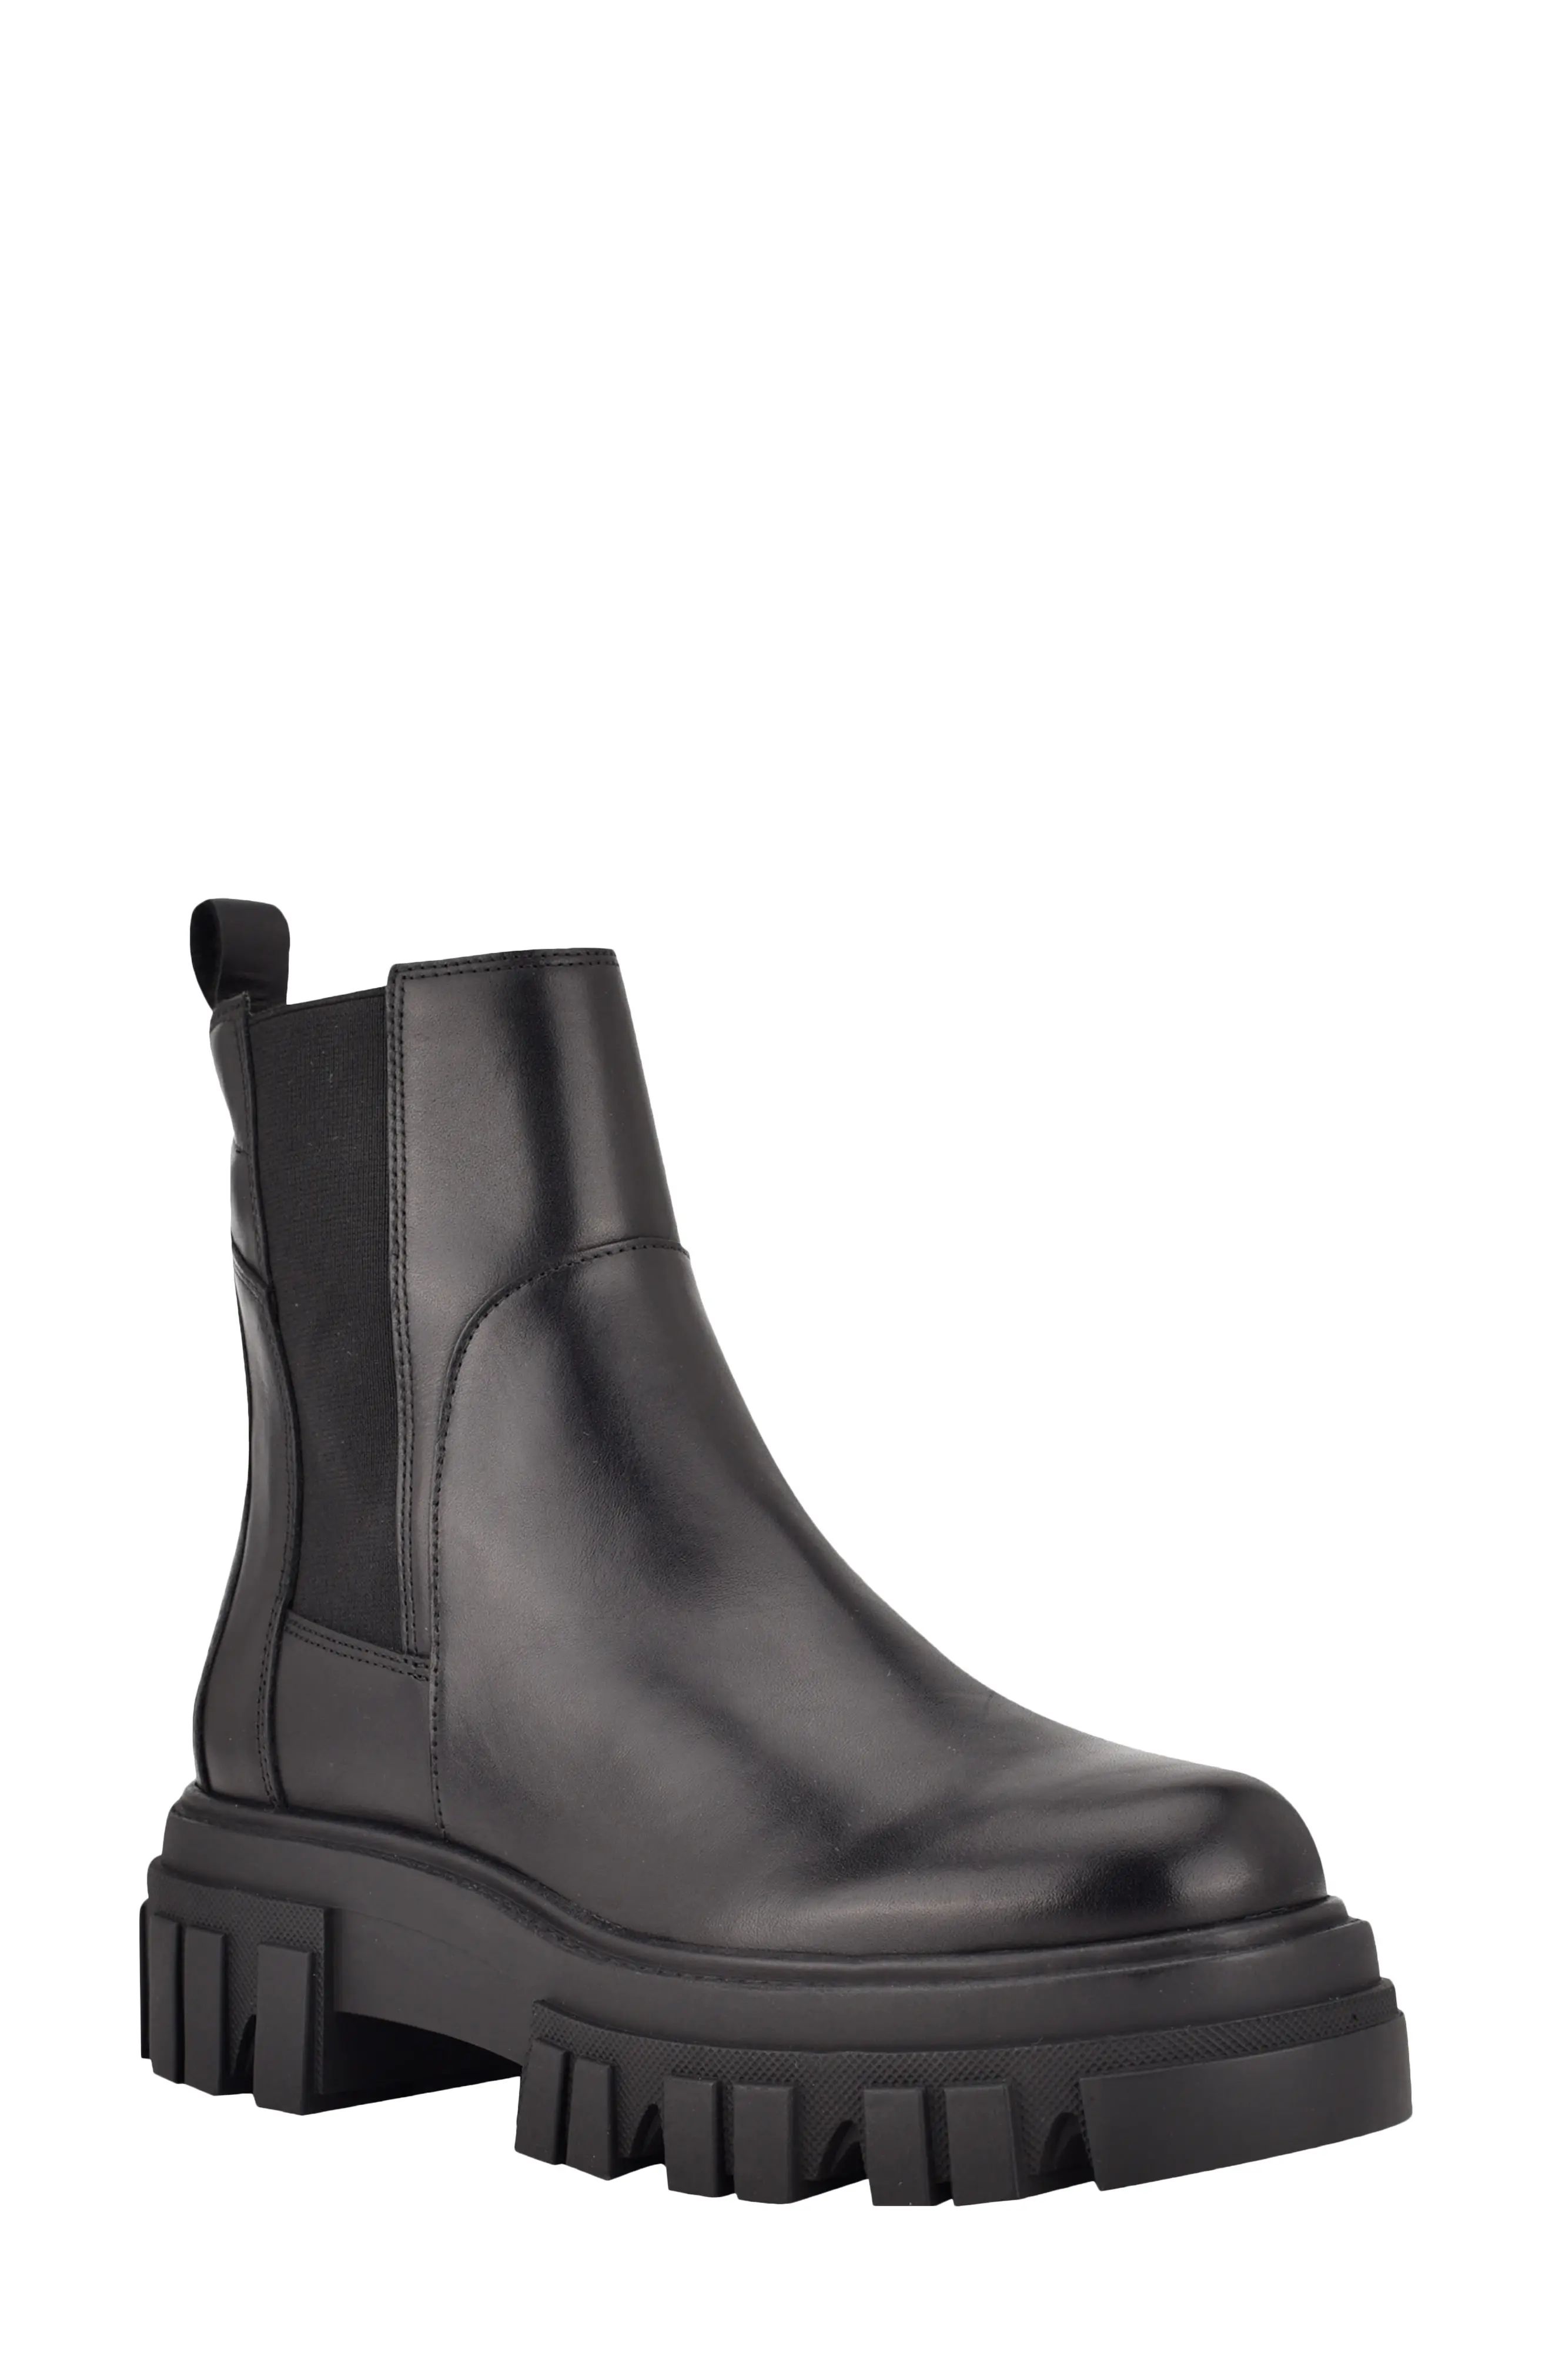 Marc Fisher LTD Meron Platform Chelsea Boot, Size 10 in Black/Black at Nordstrom | Nordstrom